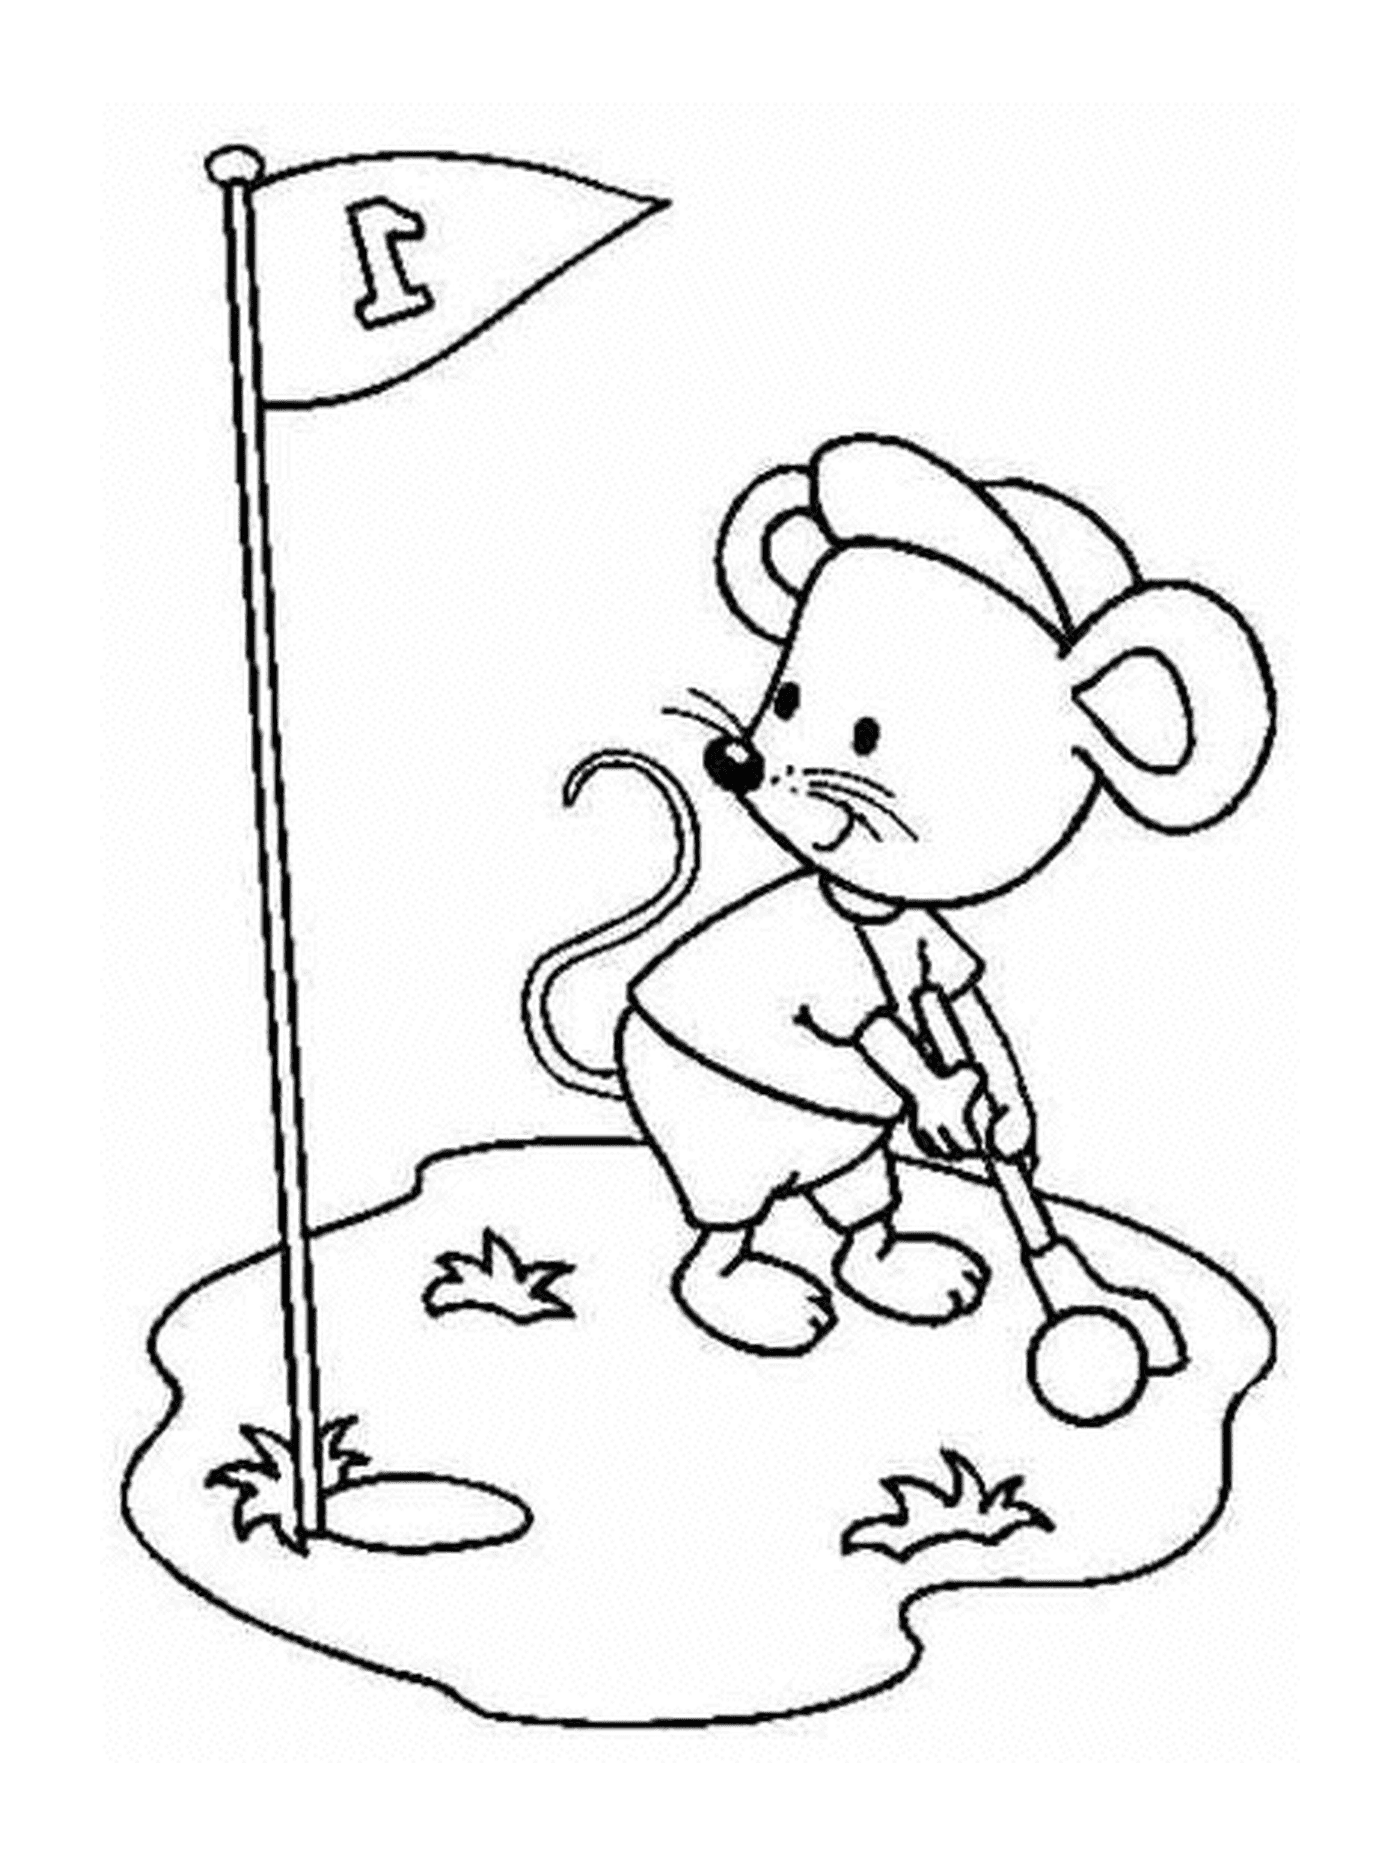  Um mouse jogando golfe 